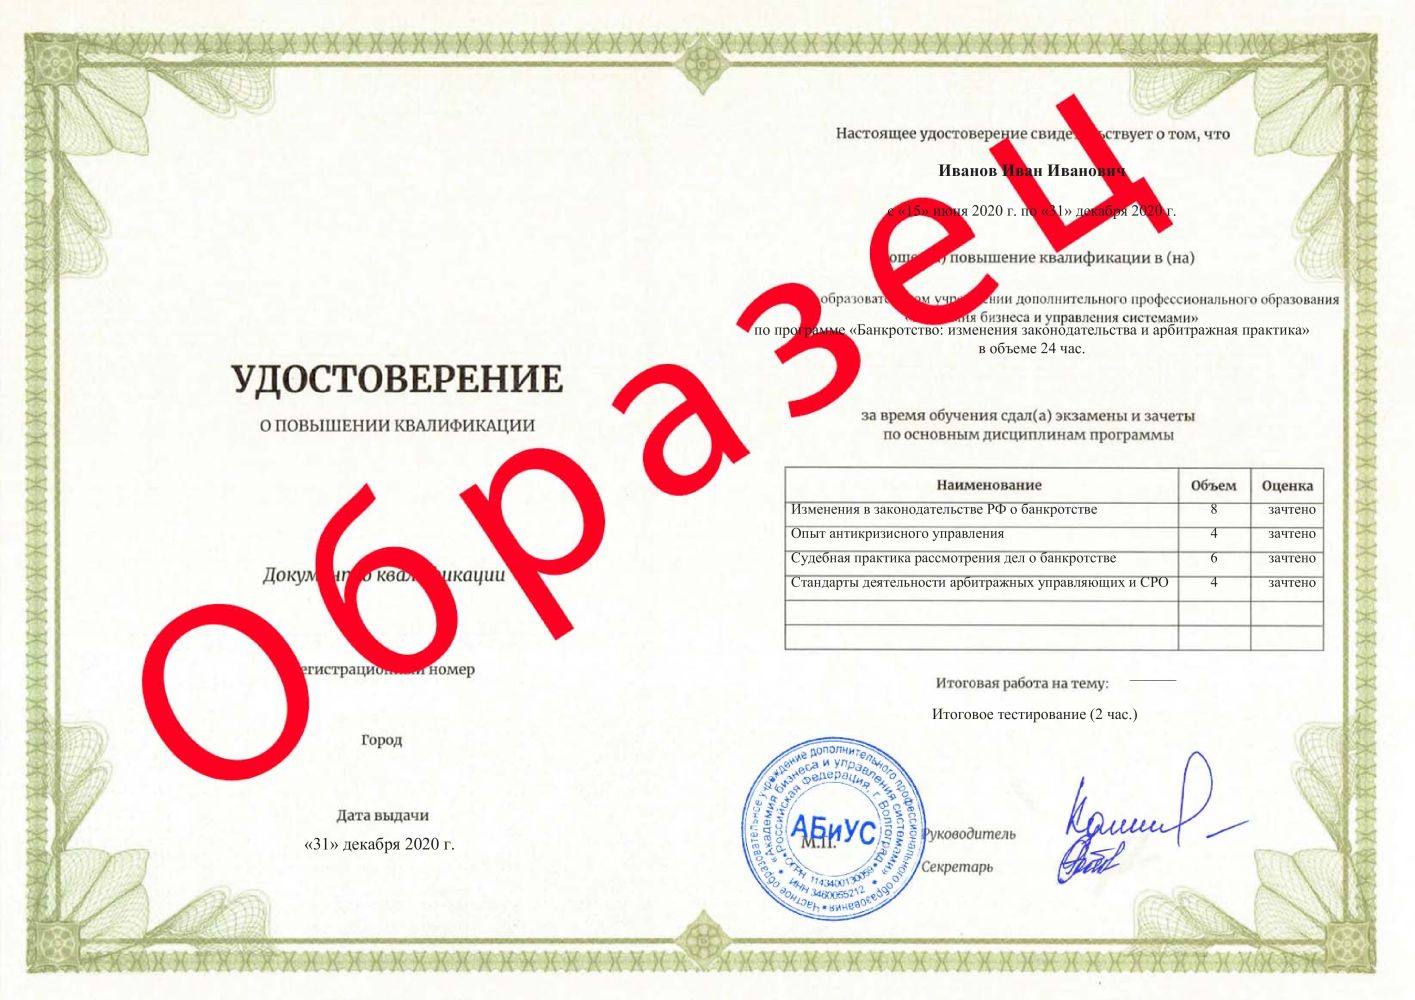 Удостоверение Банкротство: изменения законодательства и арбитражная практика 24 часа 5875 руб.